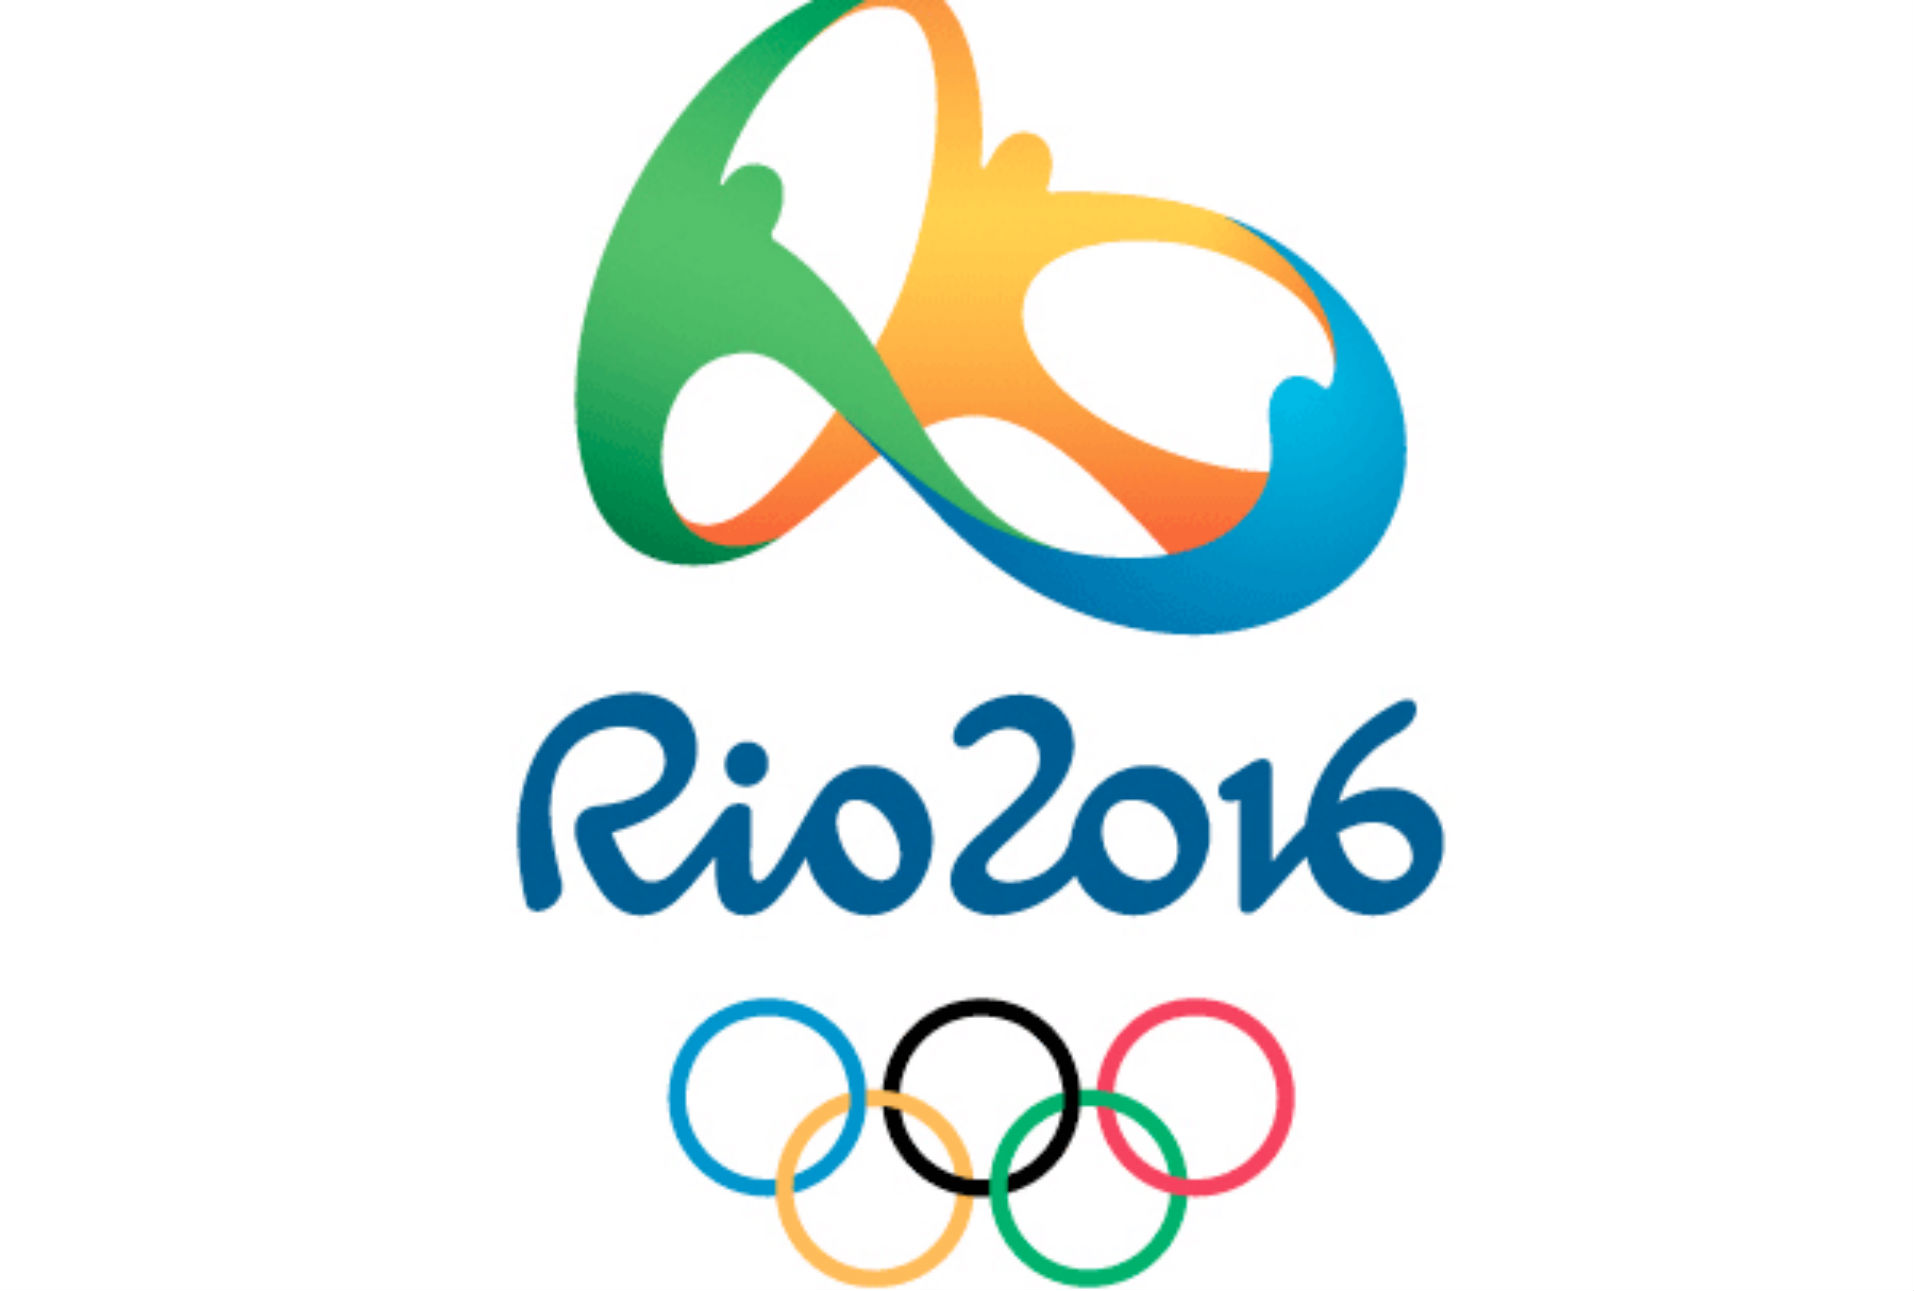 Atletas, trabajadores y patrocinadores de Río 2016 sufren censura en las redes sociales